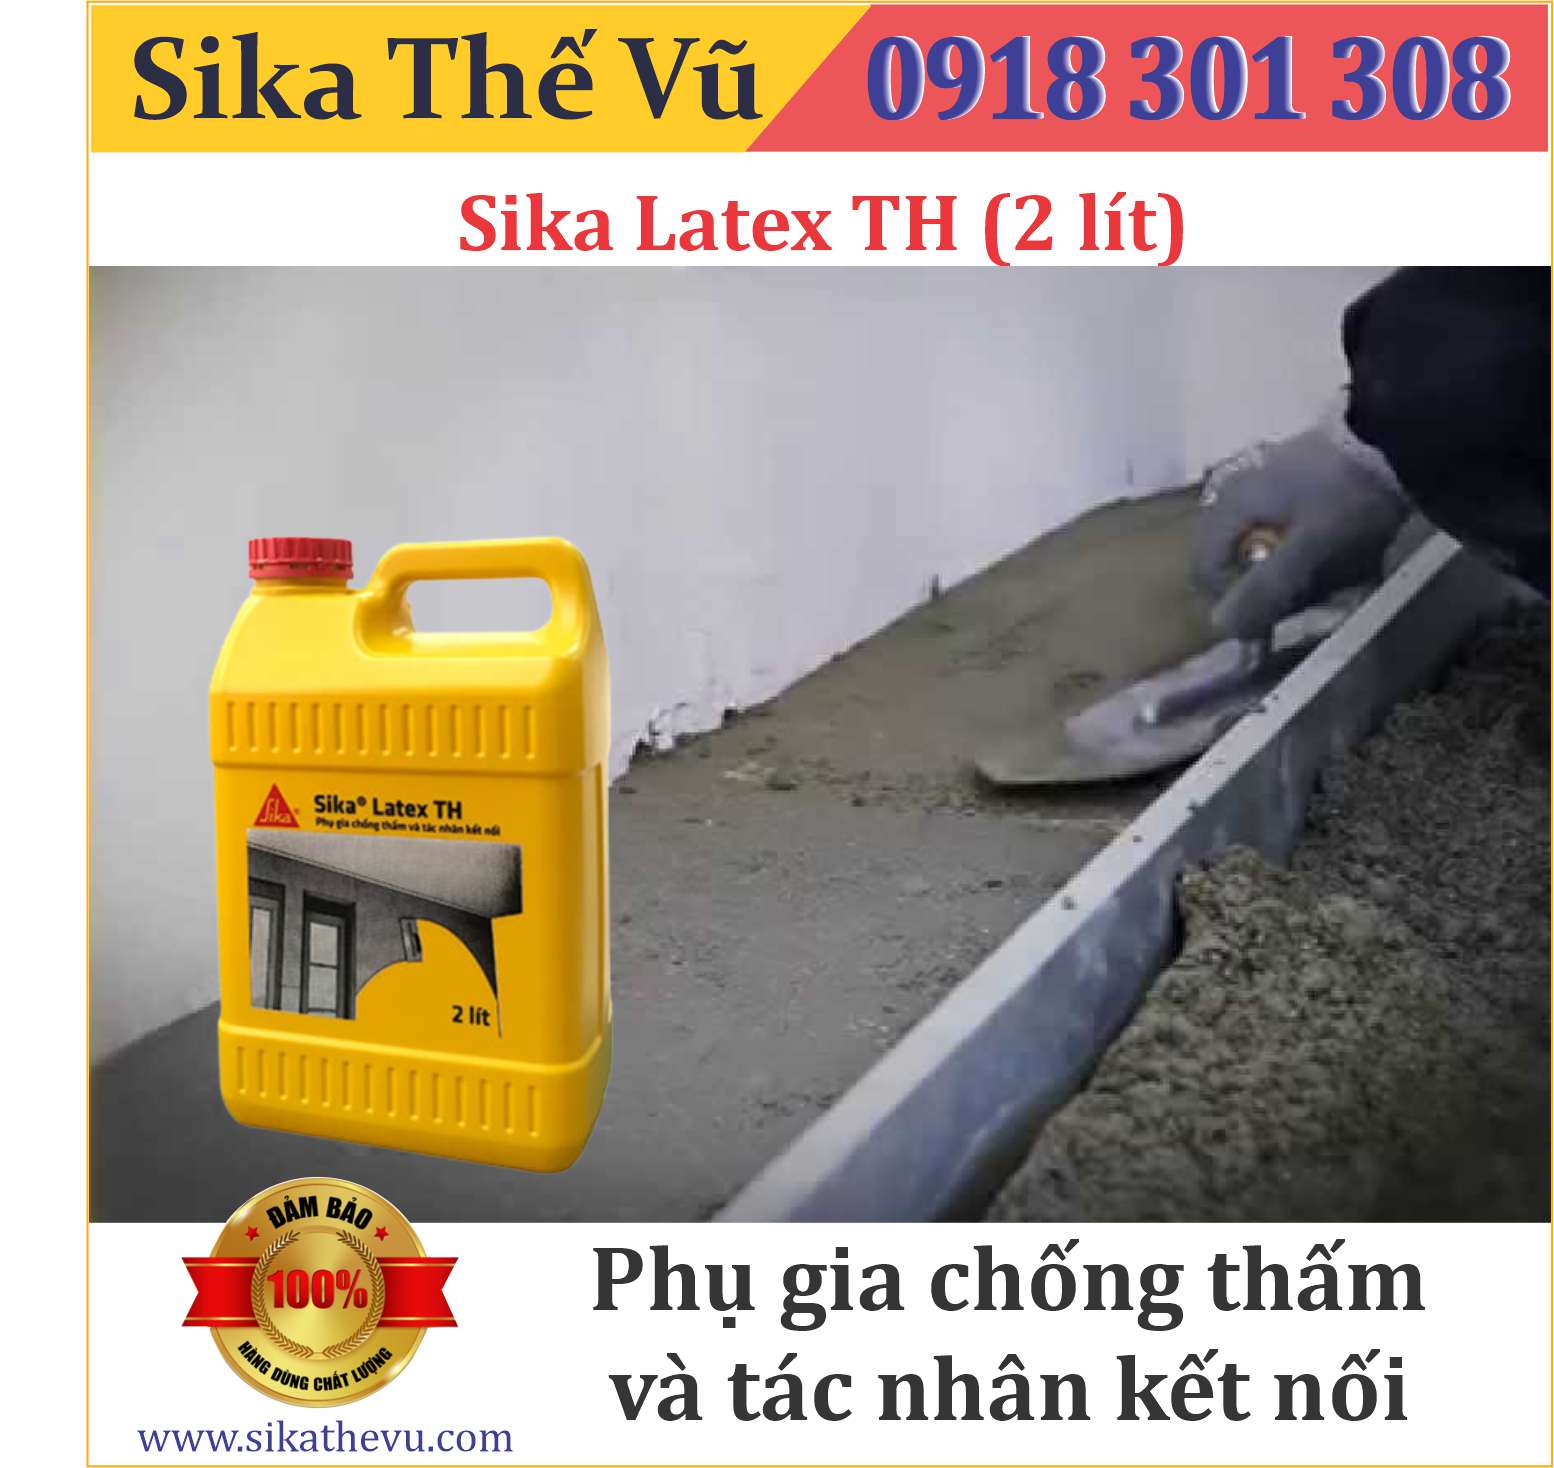 Phụ gia chống thấm vữa cao cấp và tác nhân kết nối - Sika Latex TH (thùng 2 lít)